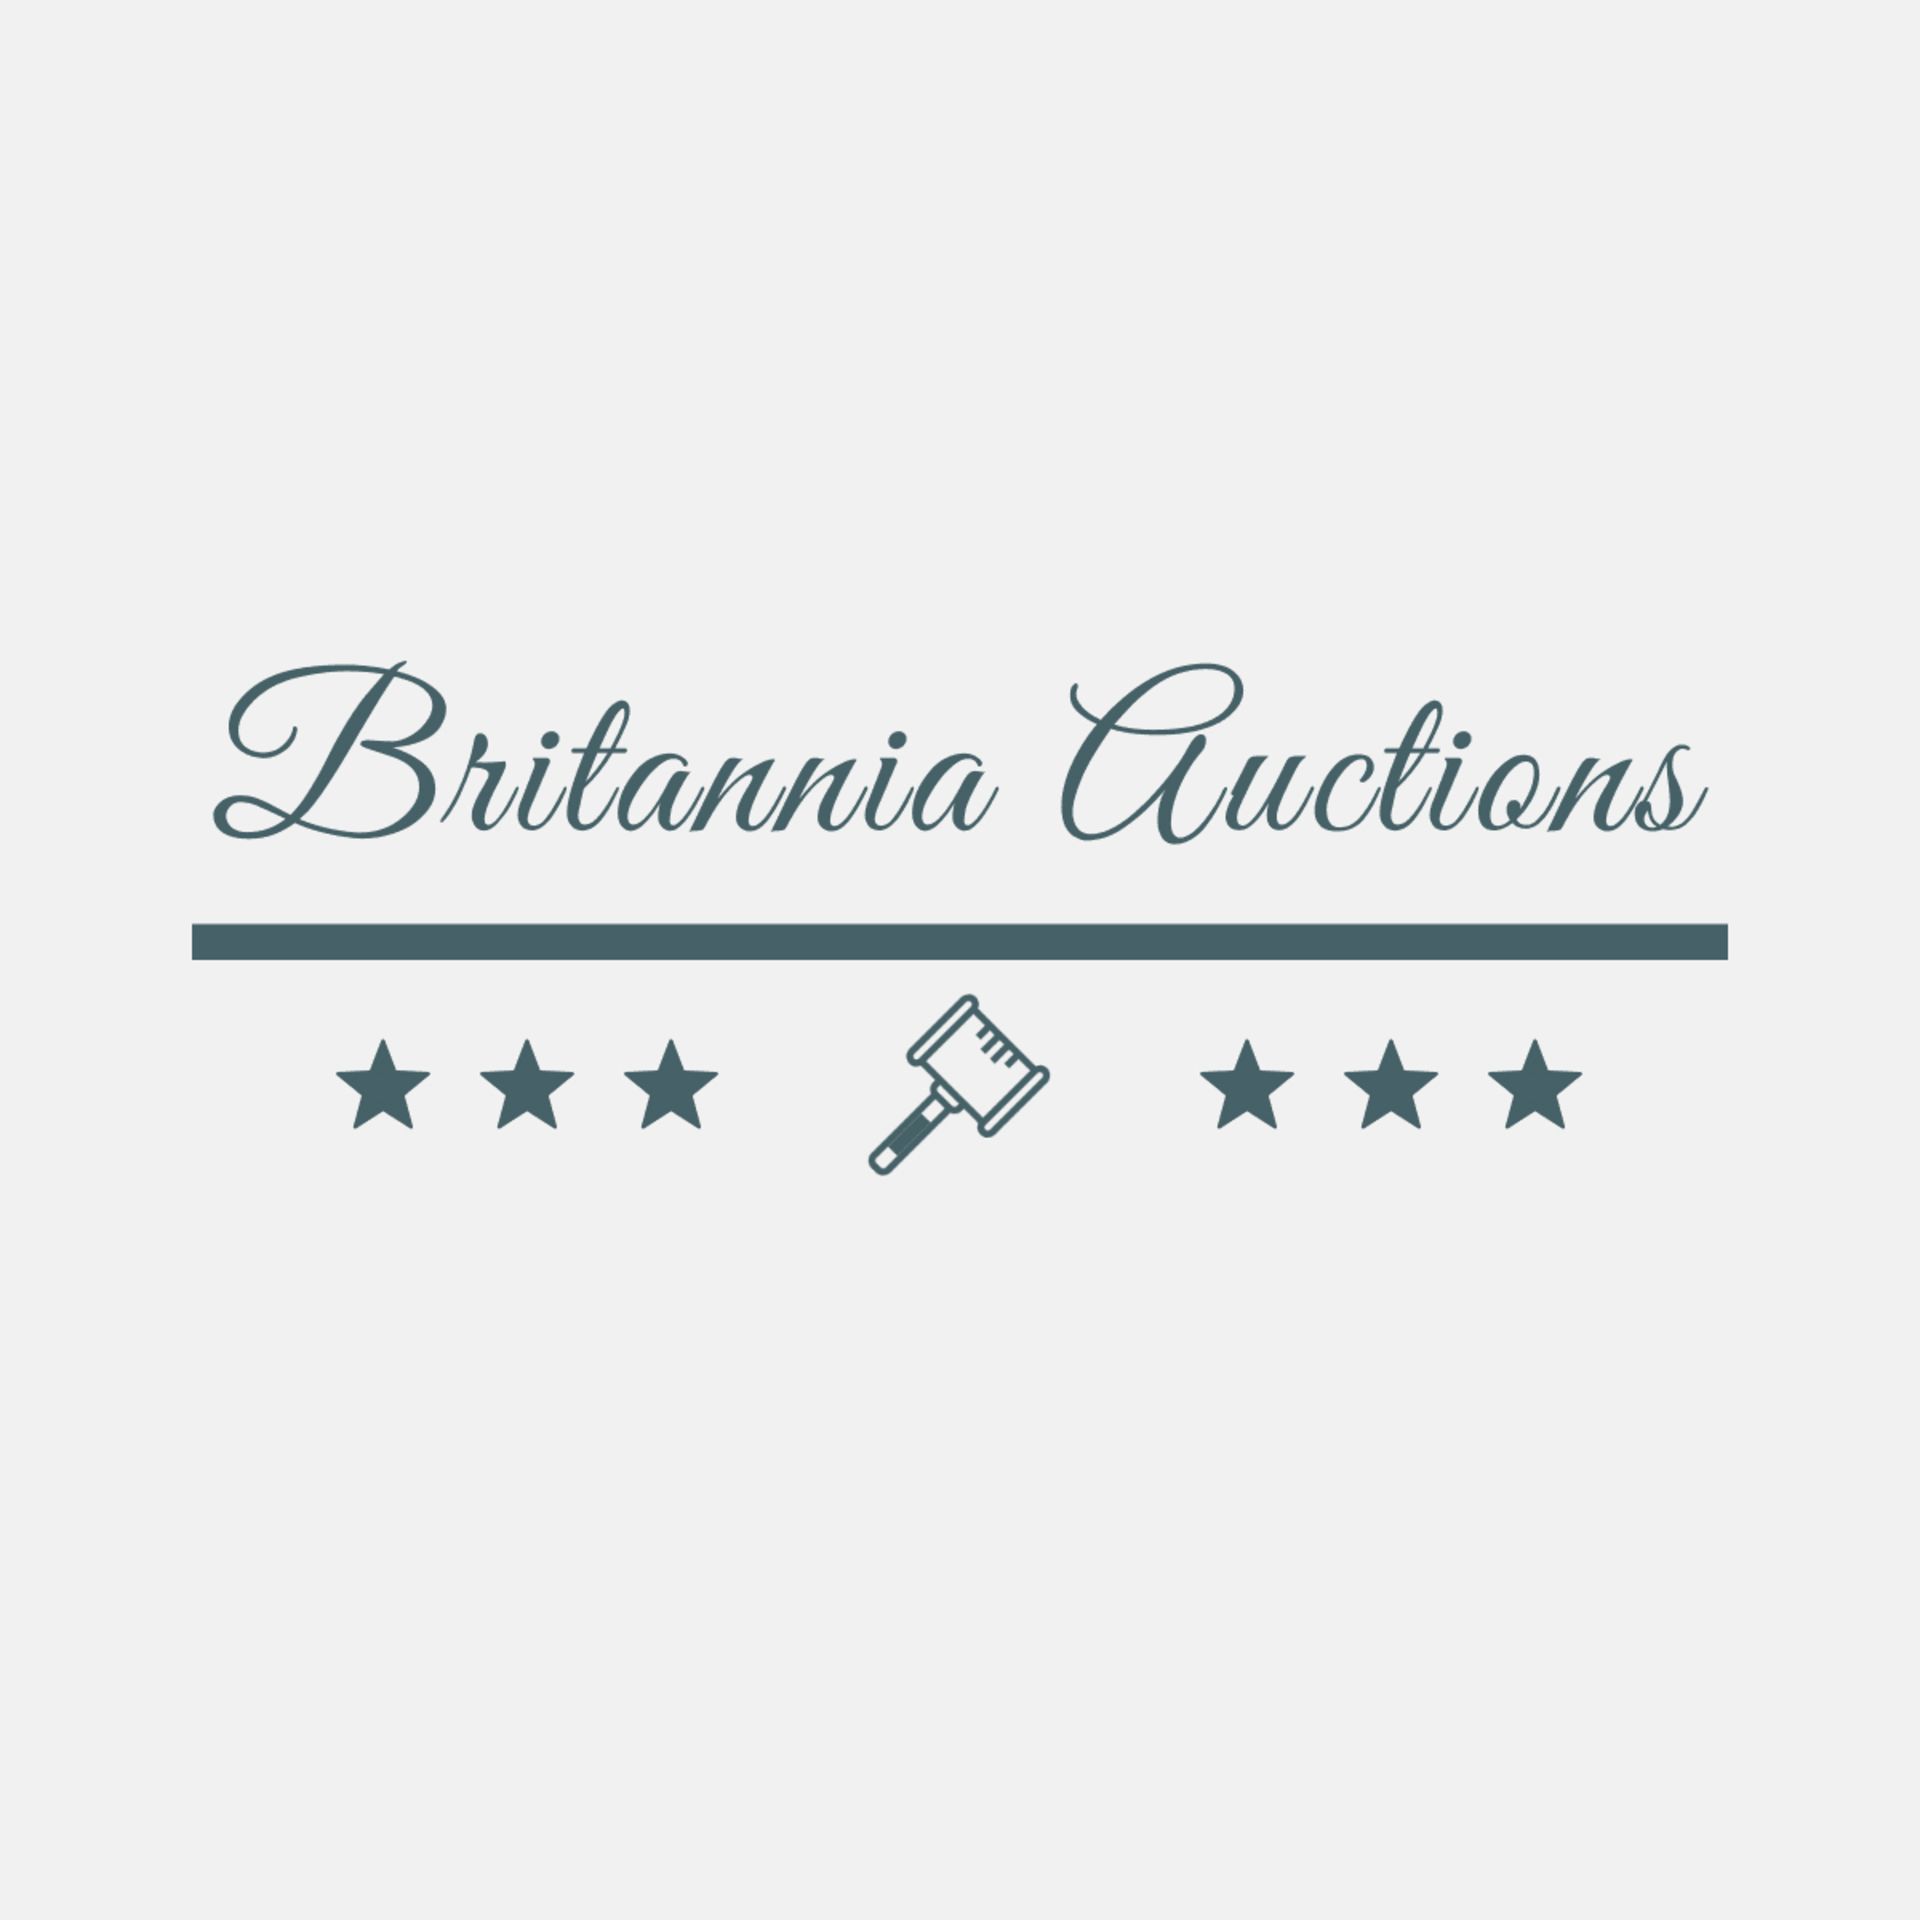 Britannia Auctions